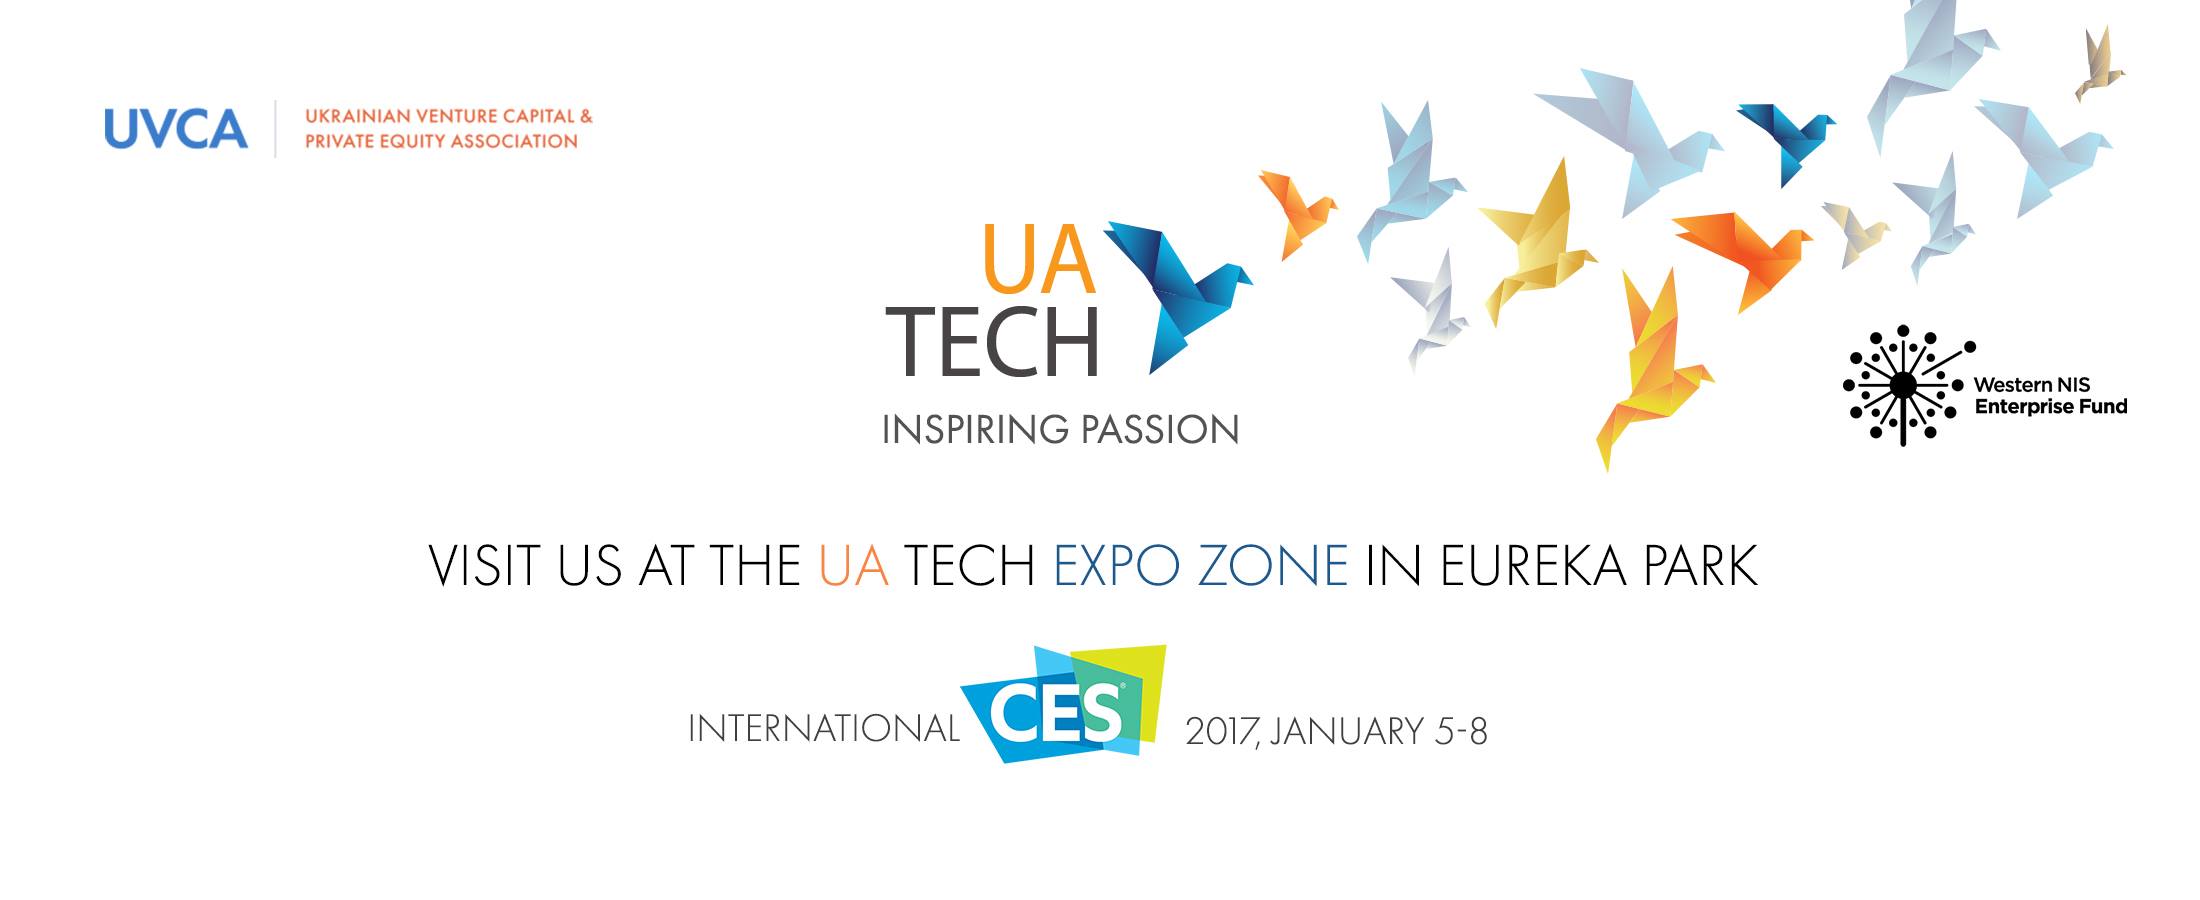 ТОП-5 потребительских технологий на CES 2017 и что представила Украина?